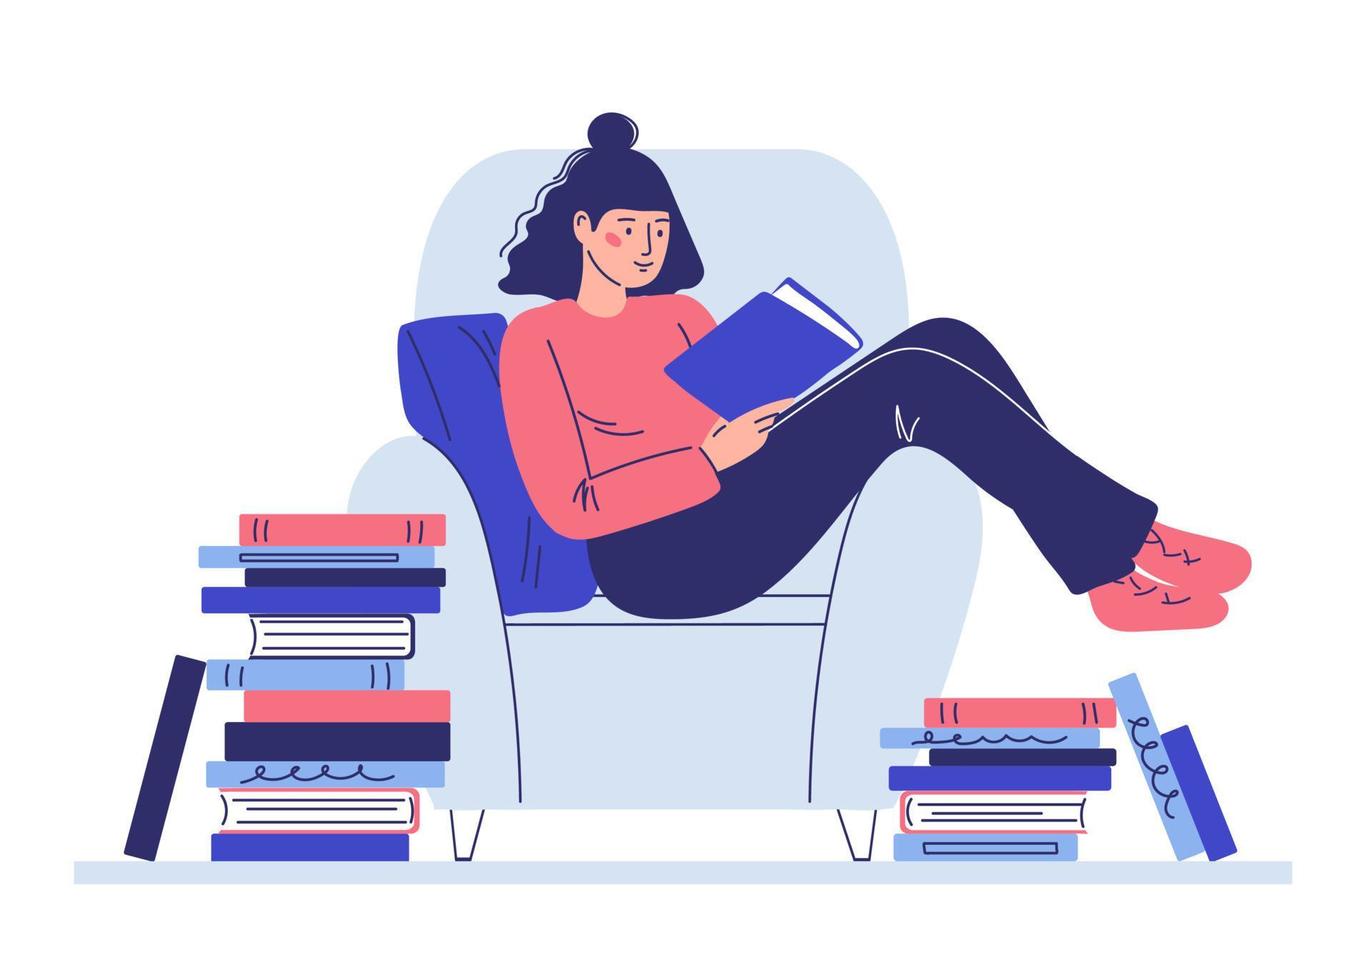 een meisje zittend in een stoel lezen van een book.concept van leren en recreatie. cartoonstijl, karikatuur vector